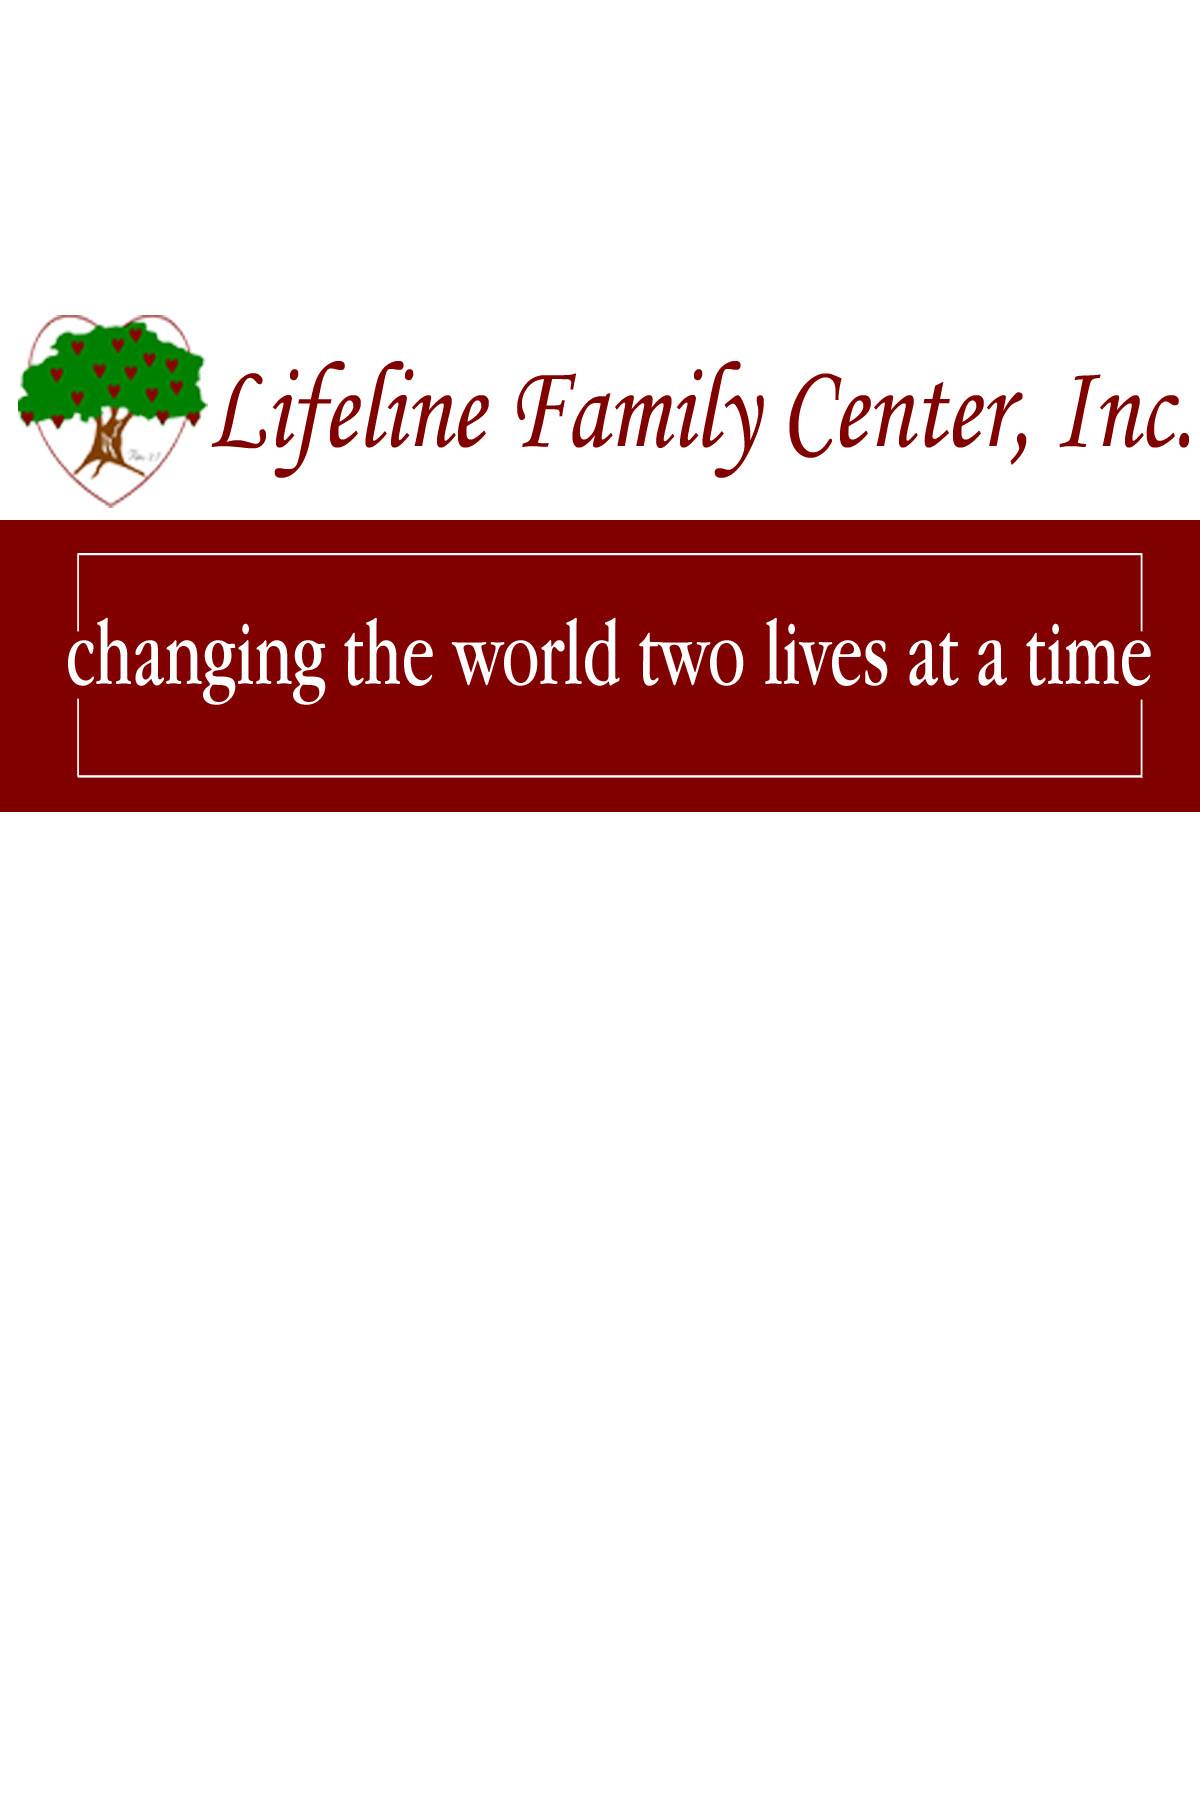 Lifeline Family Center, Inc